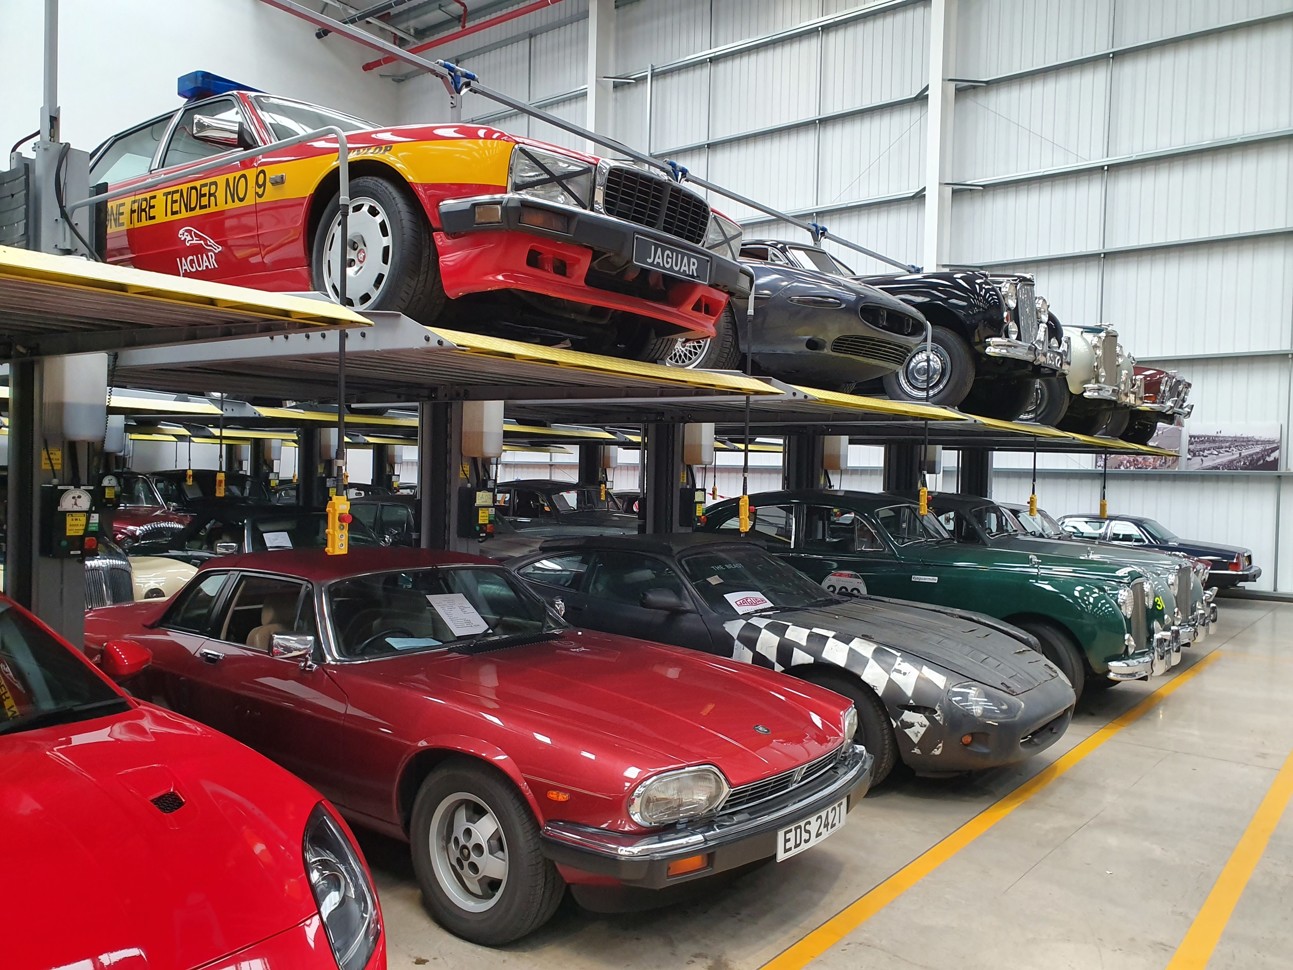 Место, где 440 уникальных машин собрано под одной крышей Jaguar, чтобы, Rover, очень, машин, такой, коллекции, например, здесь, машины, нужные, марок, о том, этого, кузов, просто, живёт, двигатель, «Ягуары», техники